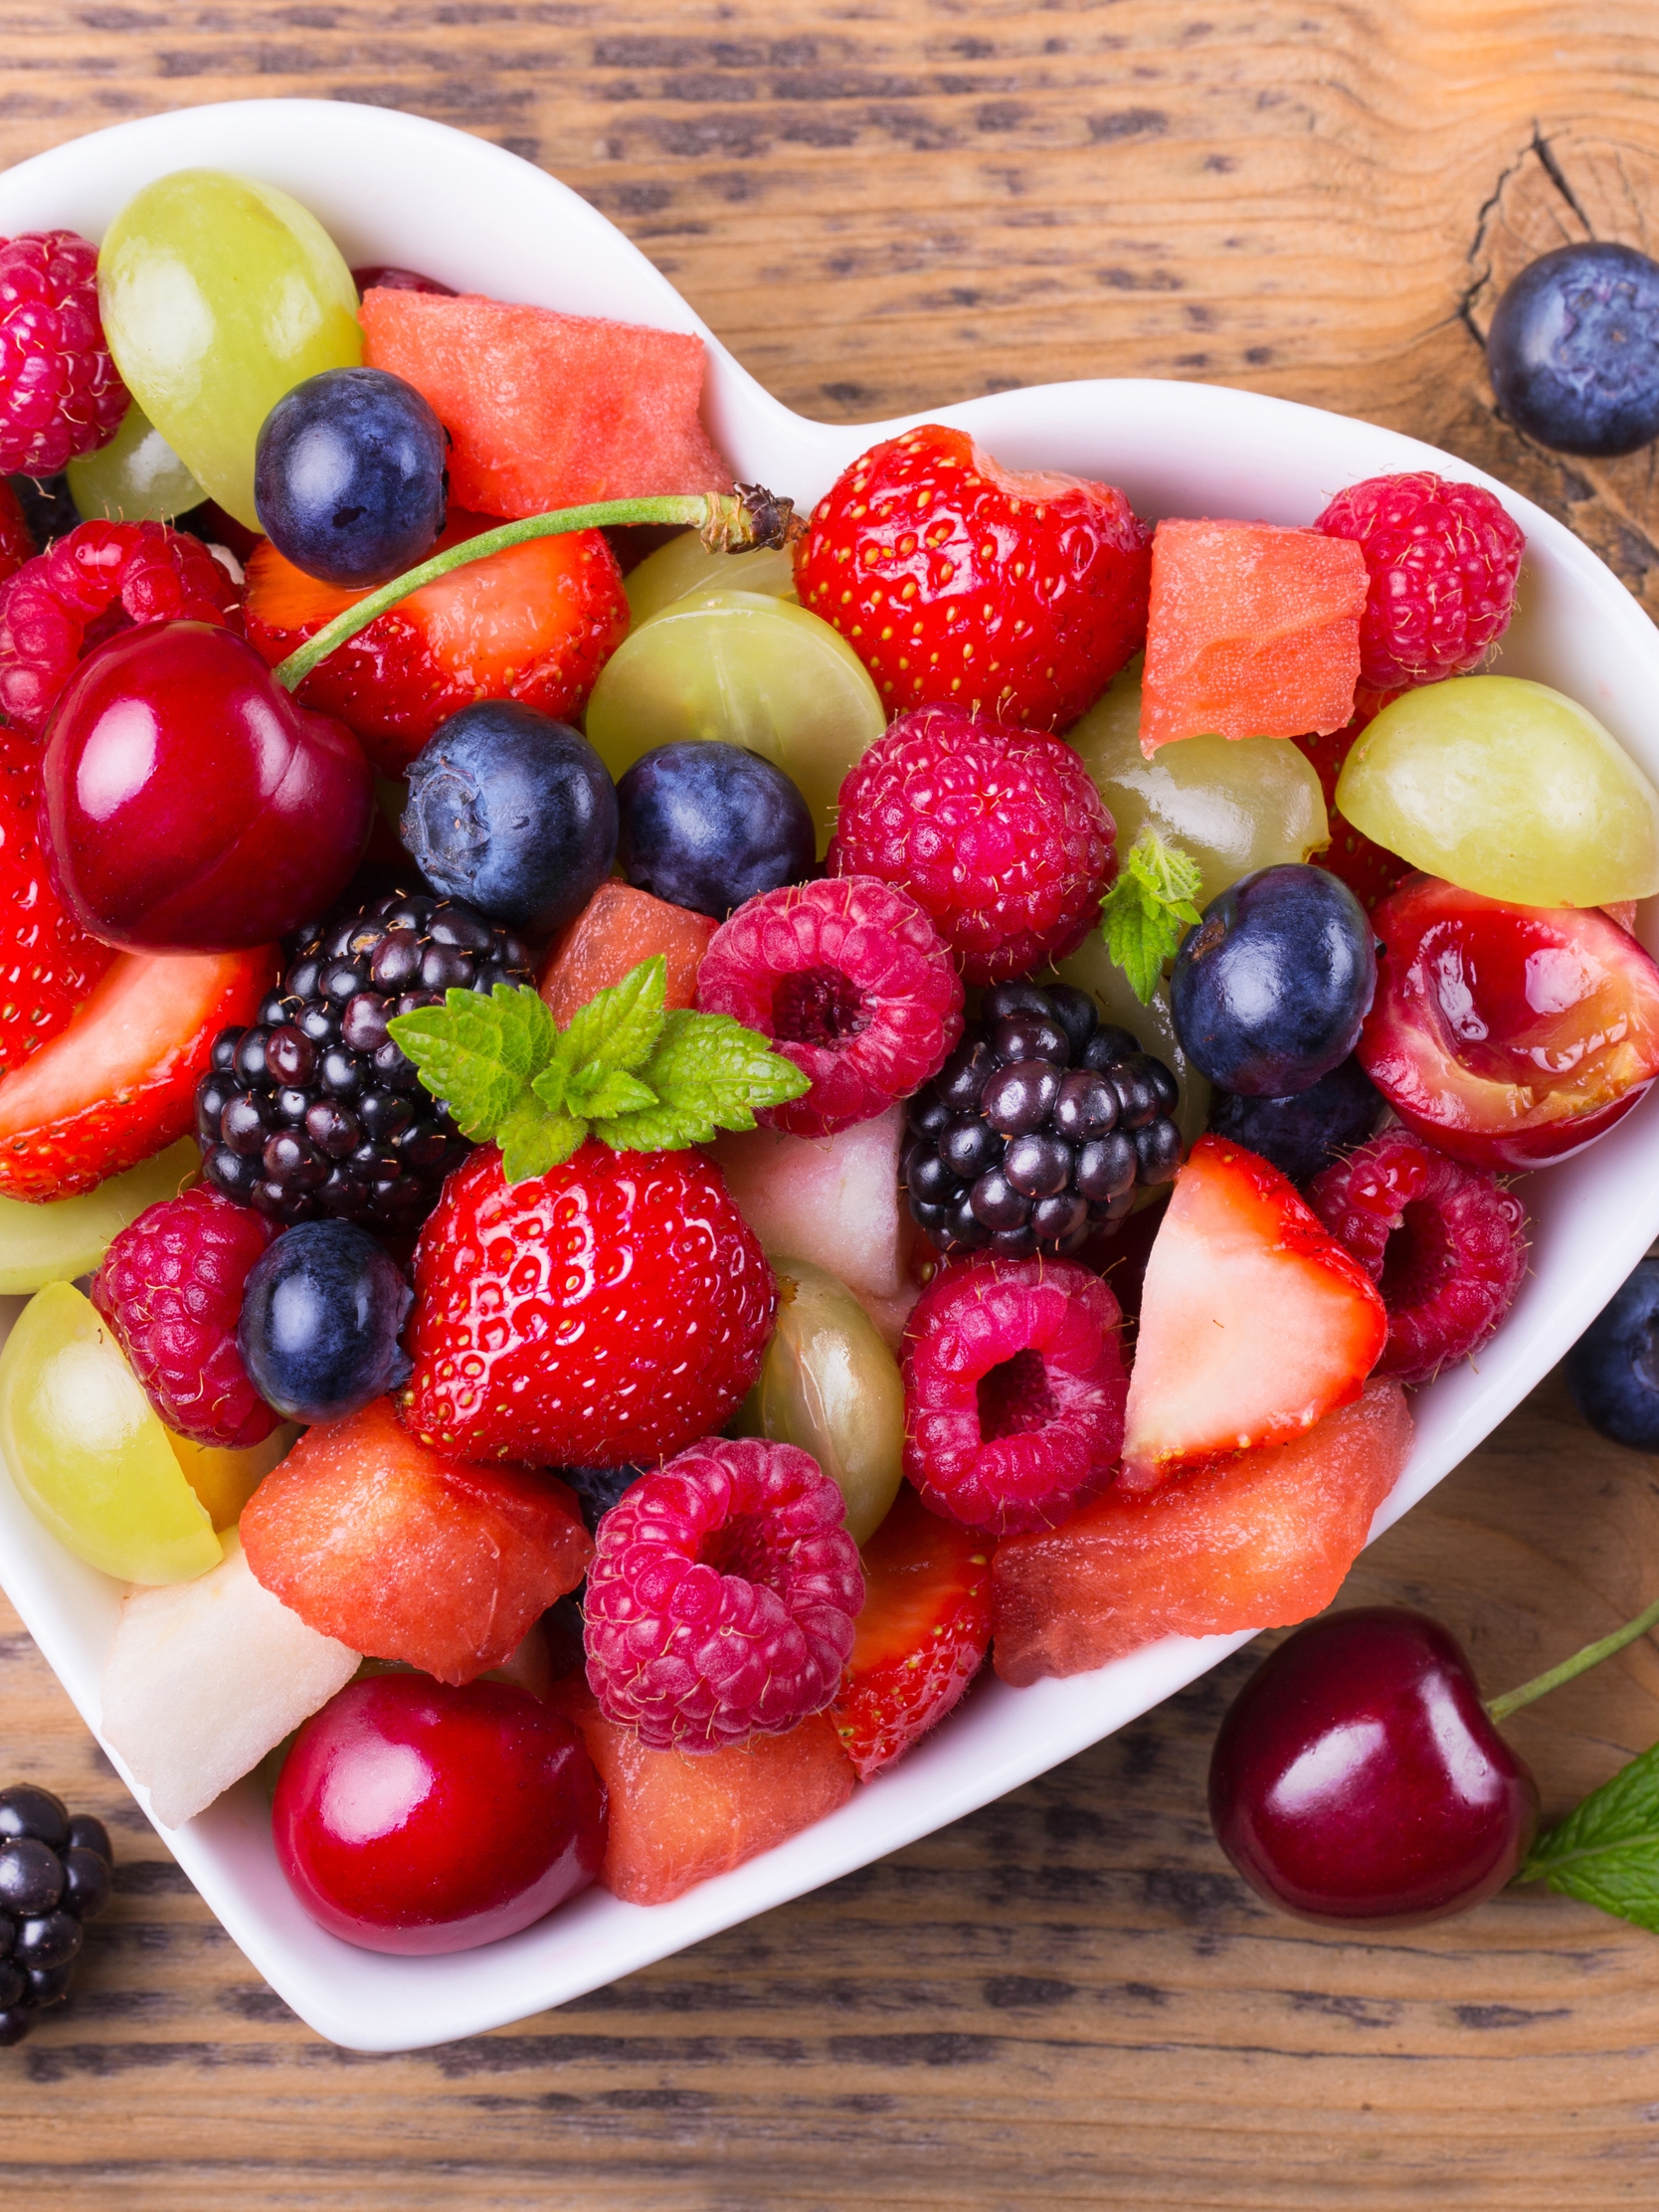 Image: Berries, vitamins, raspberries, strawberries, blackberries, cherries, blueberries, grapes, heart